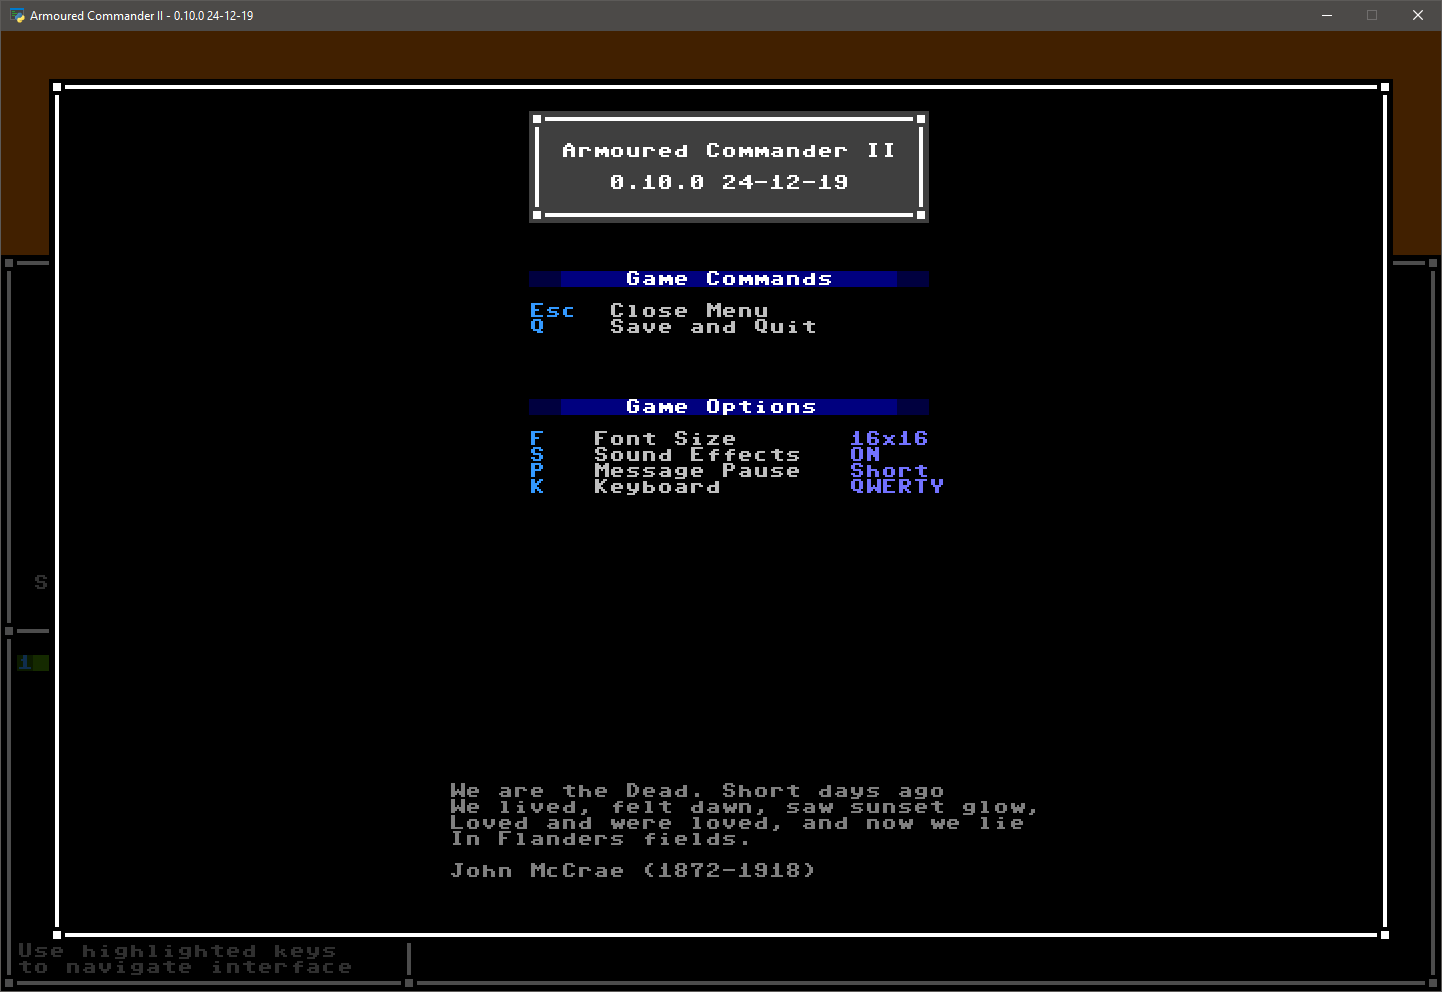 Game menu image